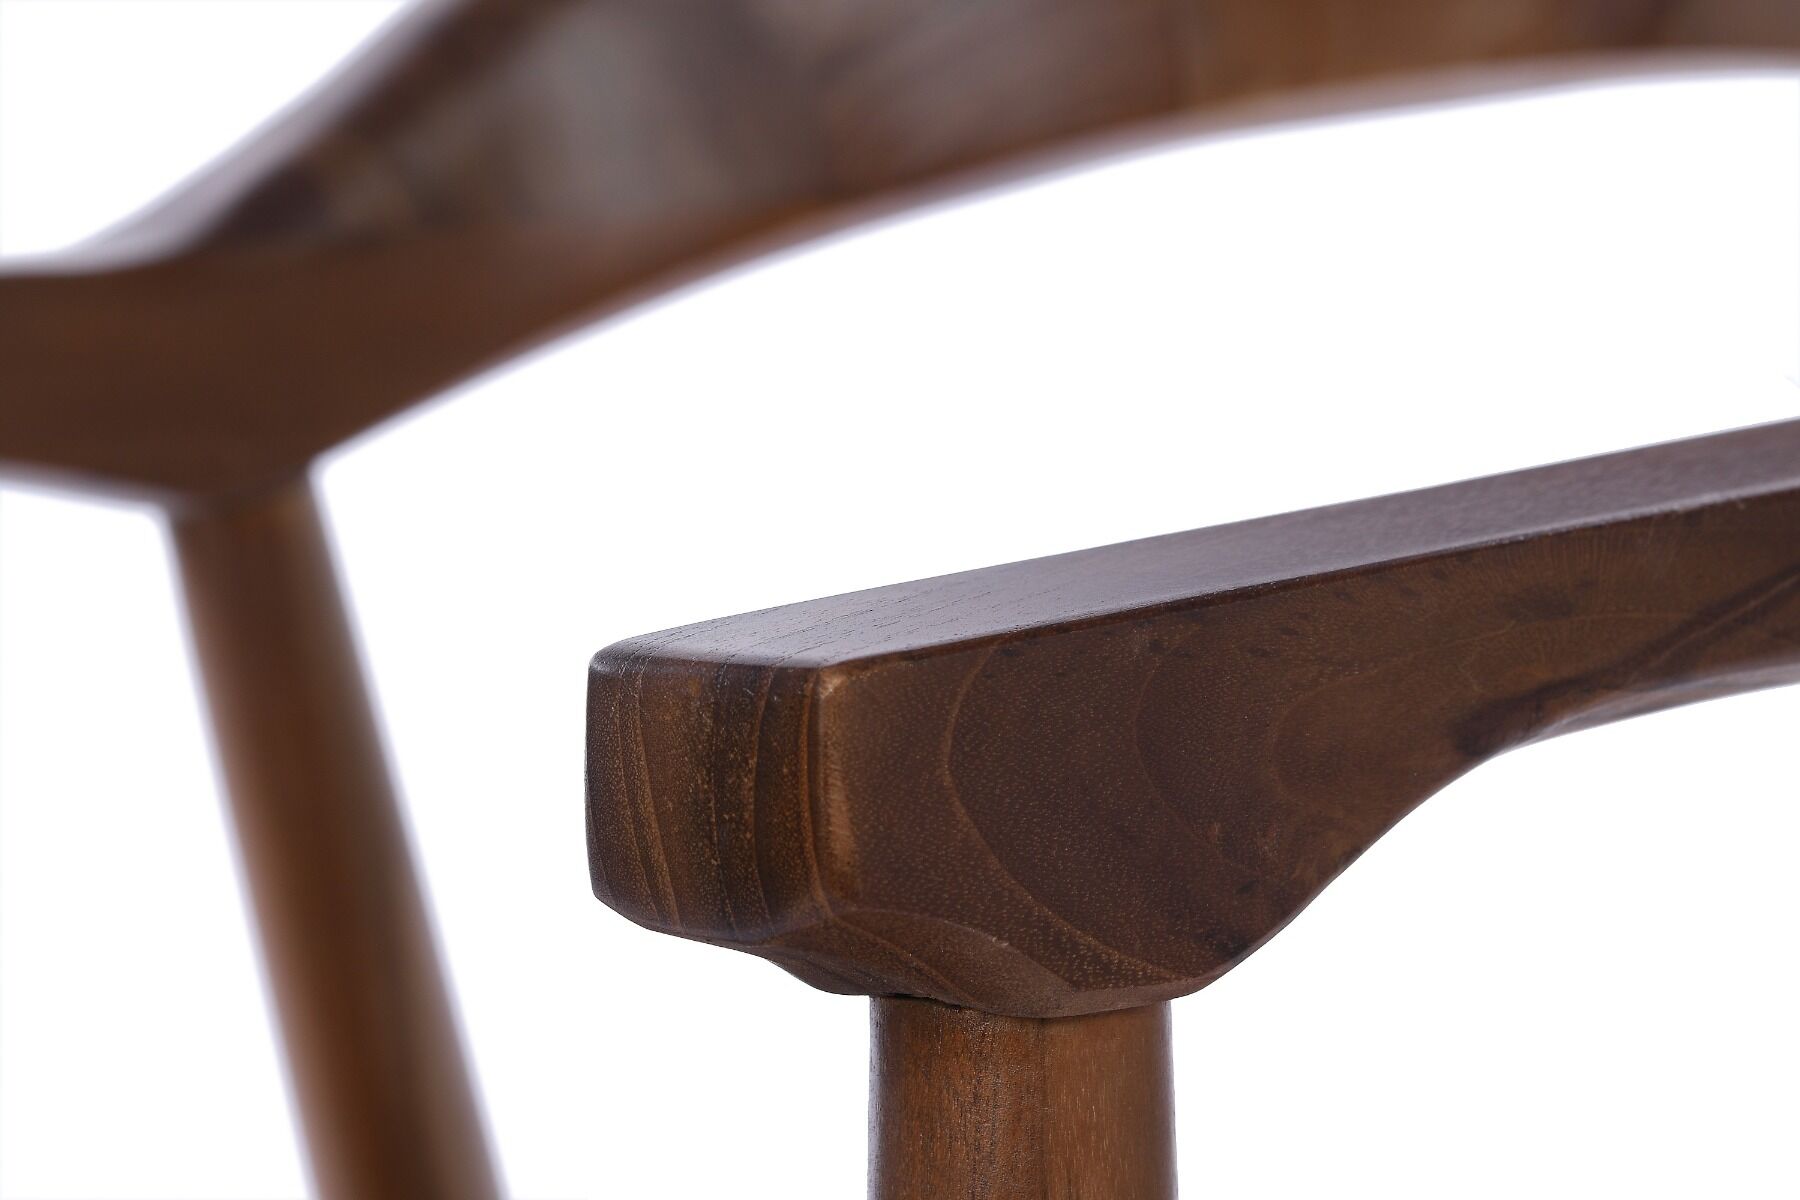 Krzesło Orient Dining 60x57x89cm